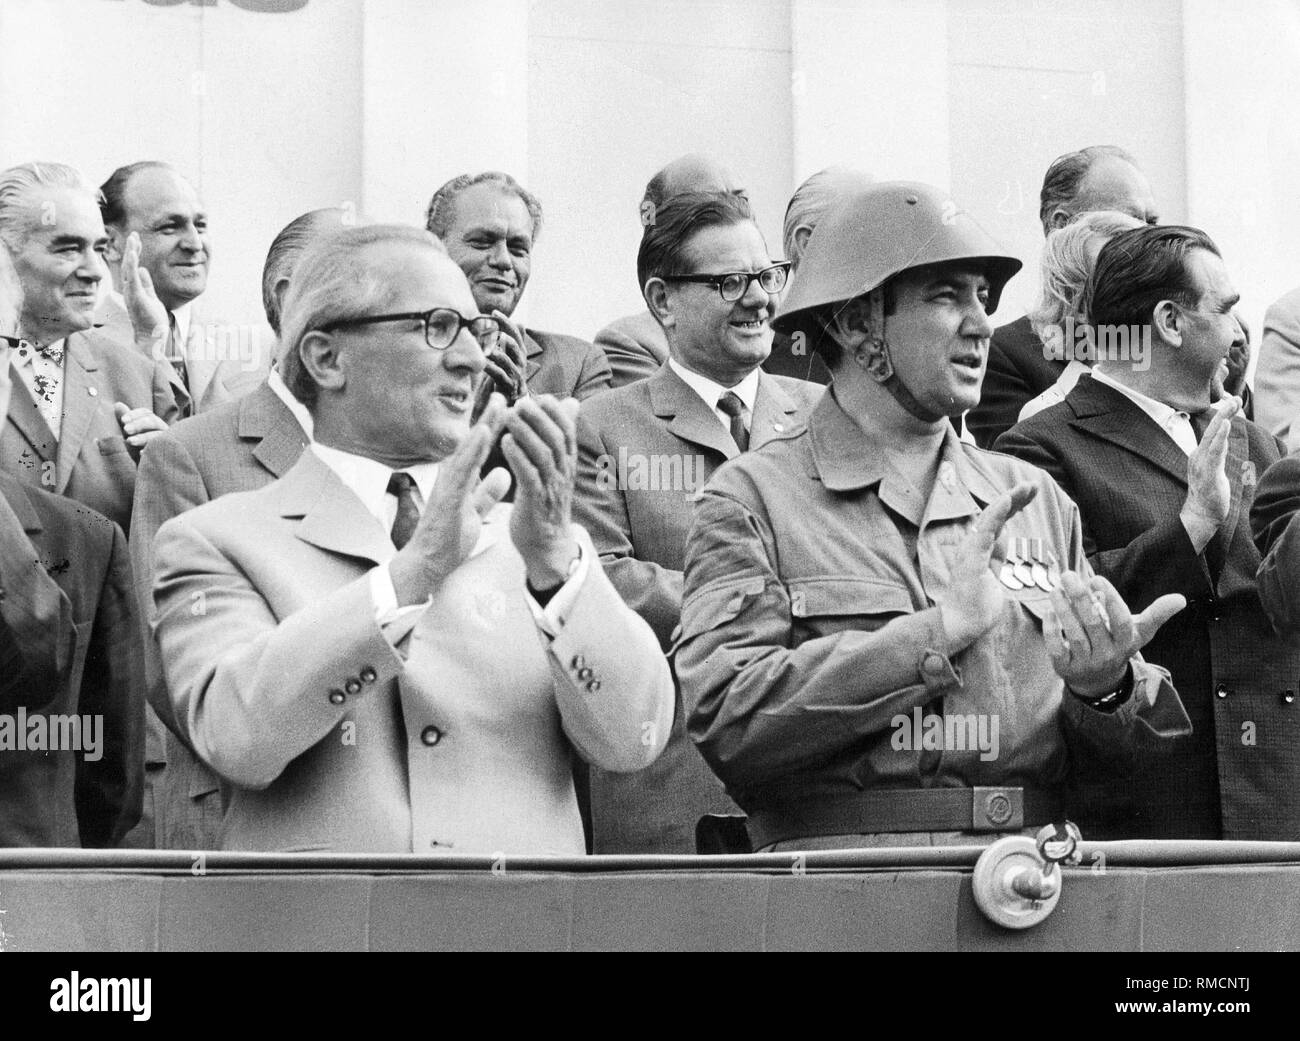 Der Zustand der Vorsitzende Honecker (links) begrüßt bei der Parade zum 10. Jahrestag des Baus der Berliner Mauer. Neben ihm ist der Kopf der Kampfgruppen der Arbeiterklasse, der "Genosse Bock". Stockfoto